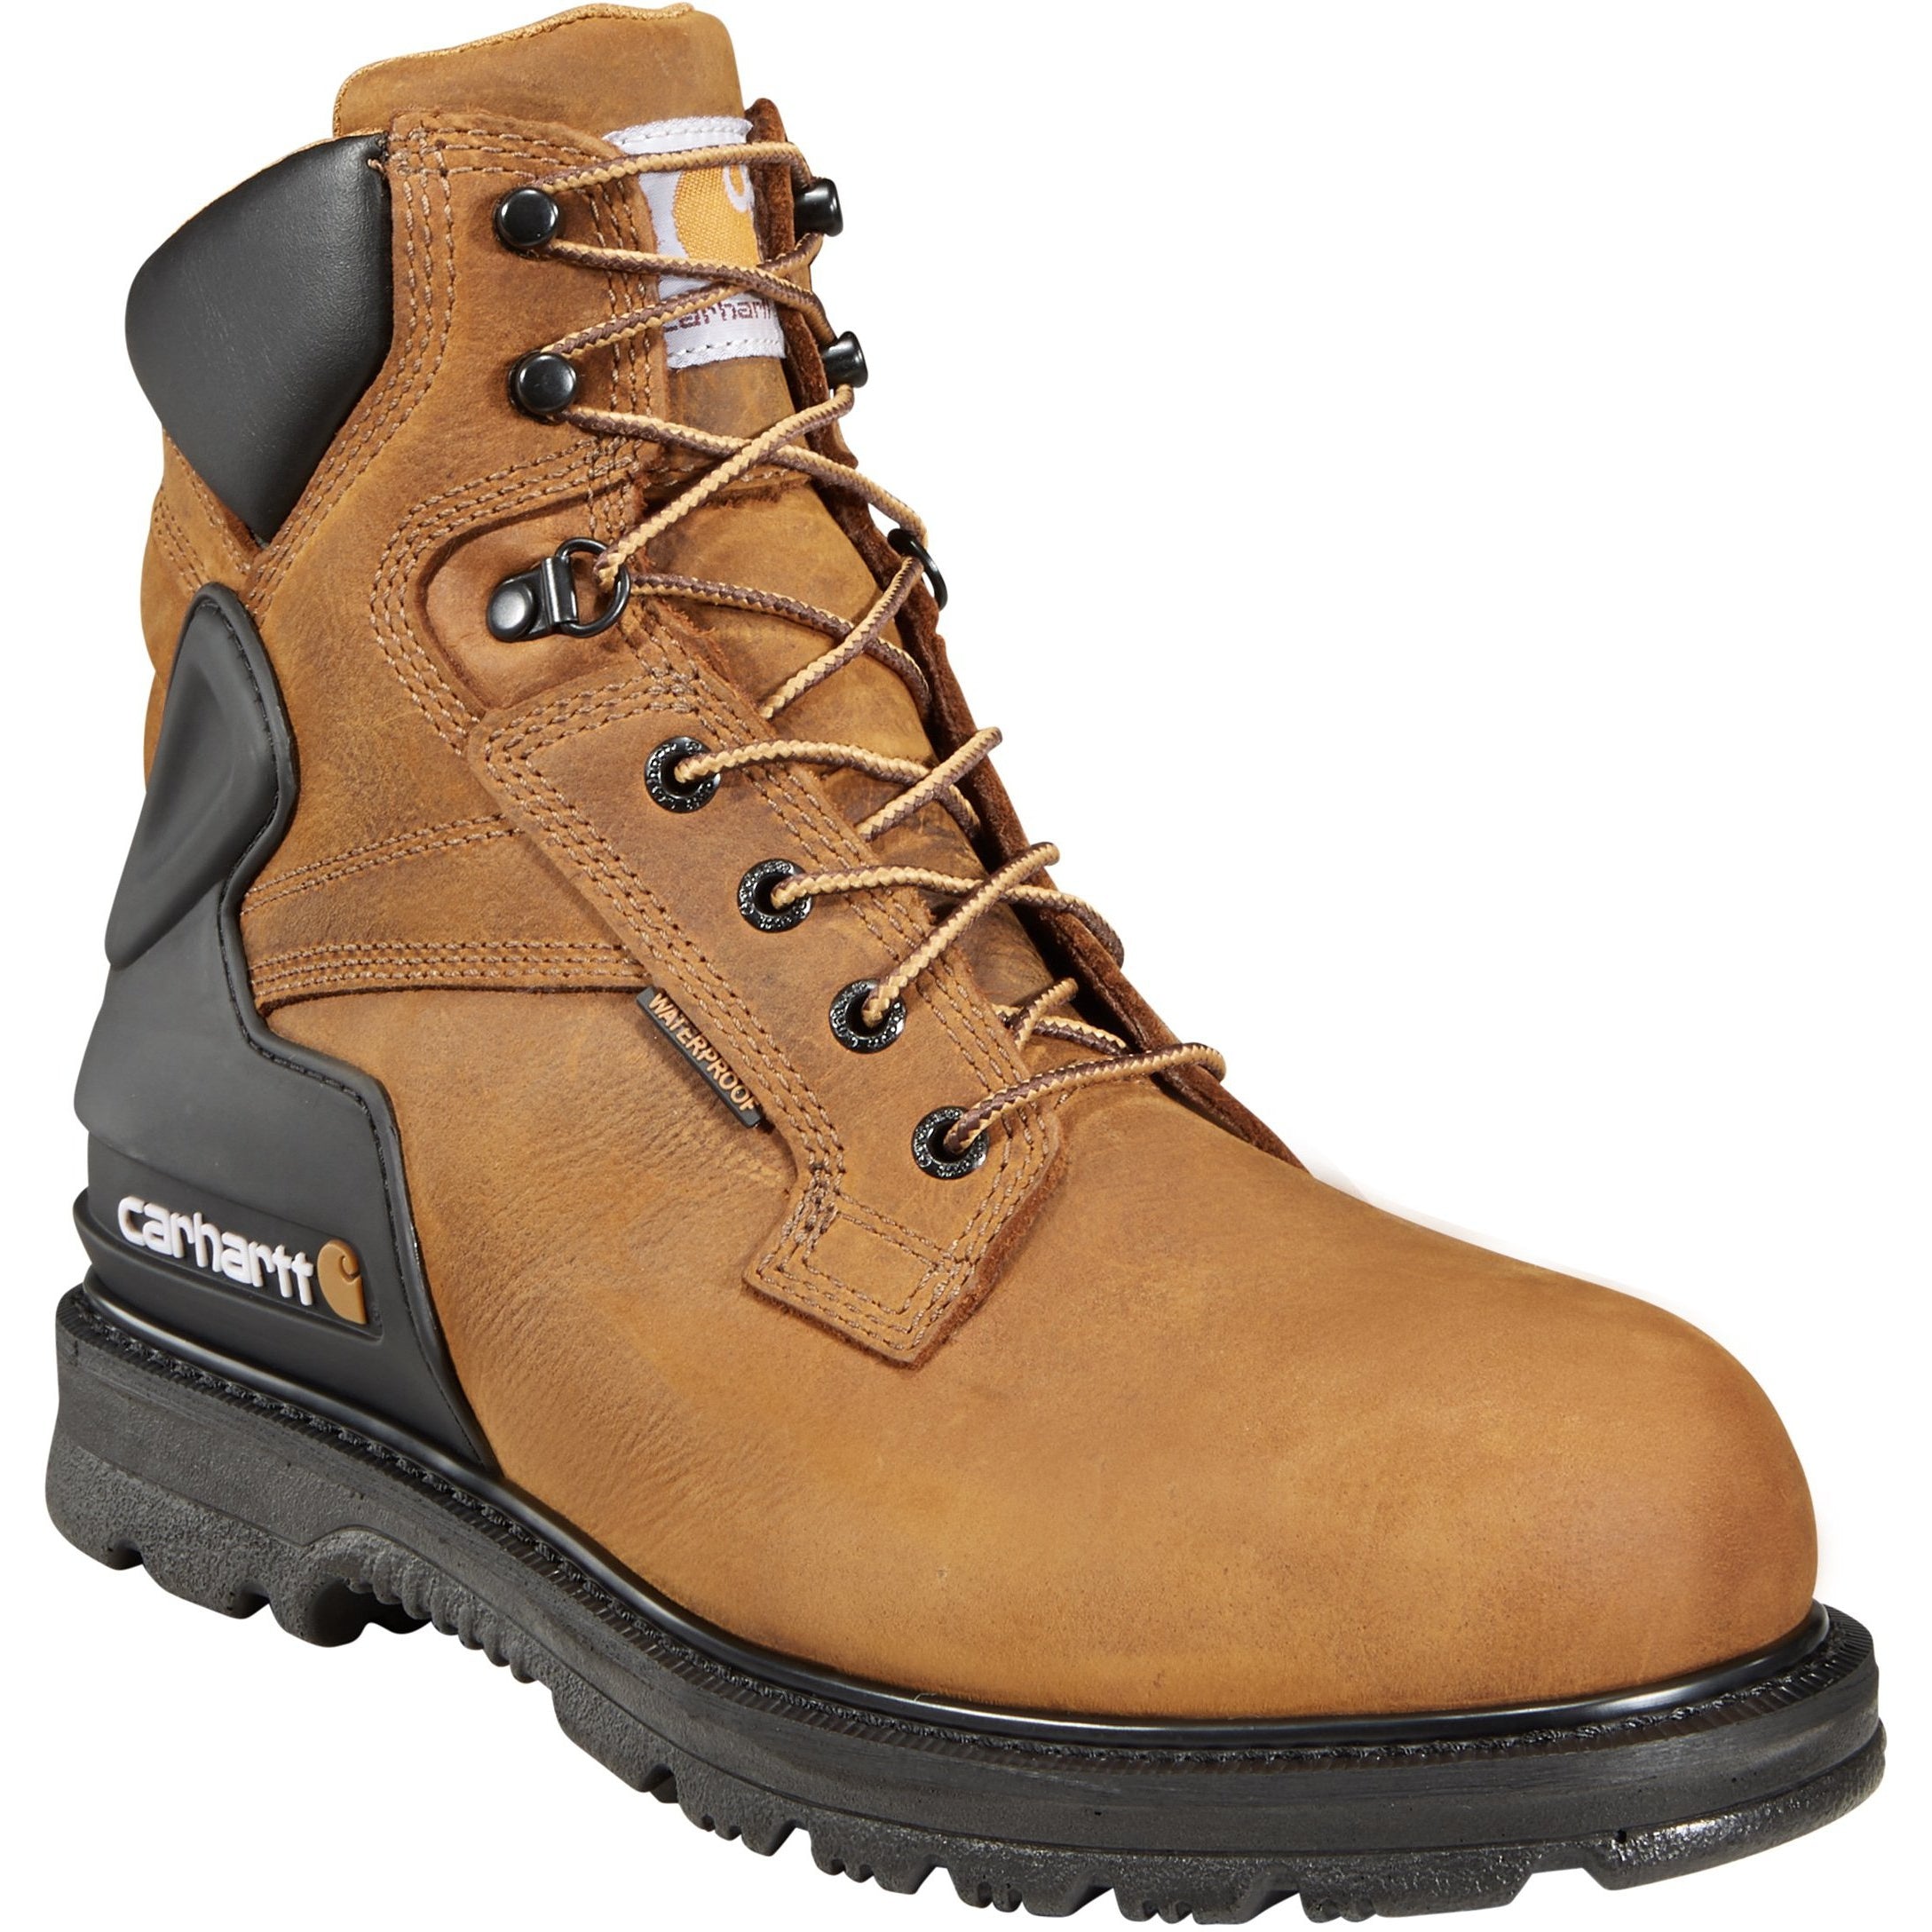 Carhartt Men's 6" Steel Toe Waterproof Work Boot - Brown - CMW6220 8 / Medium / Brown - Overlook Boots